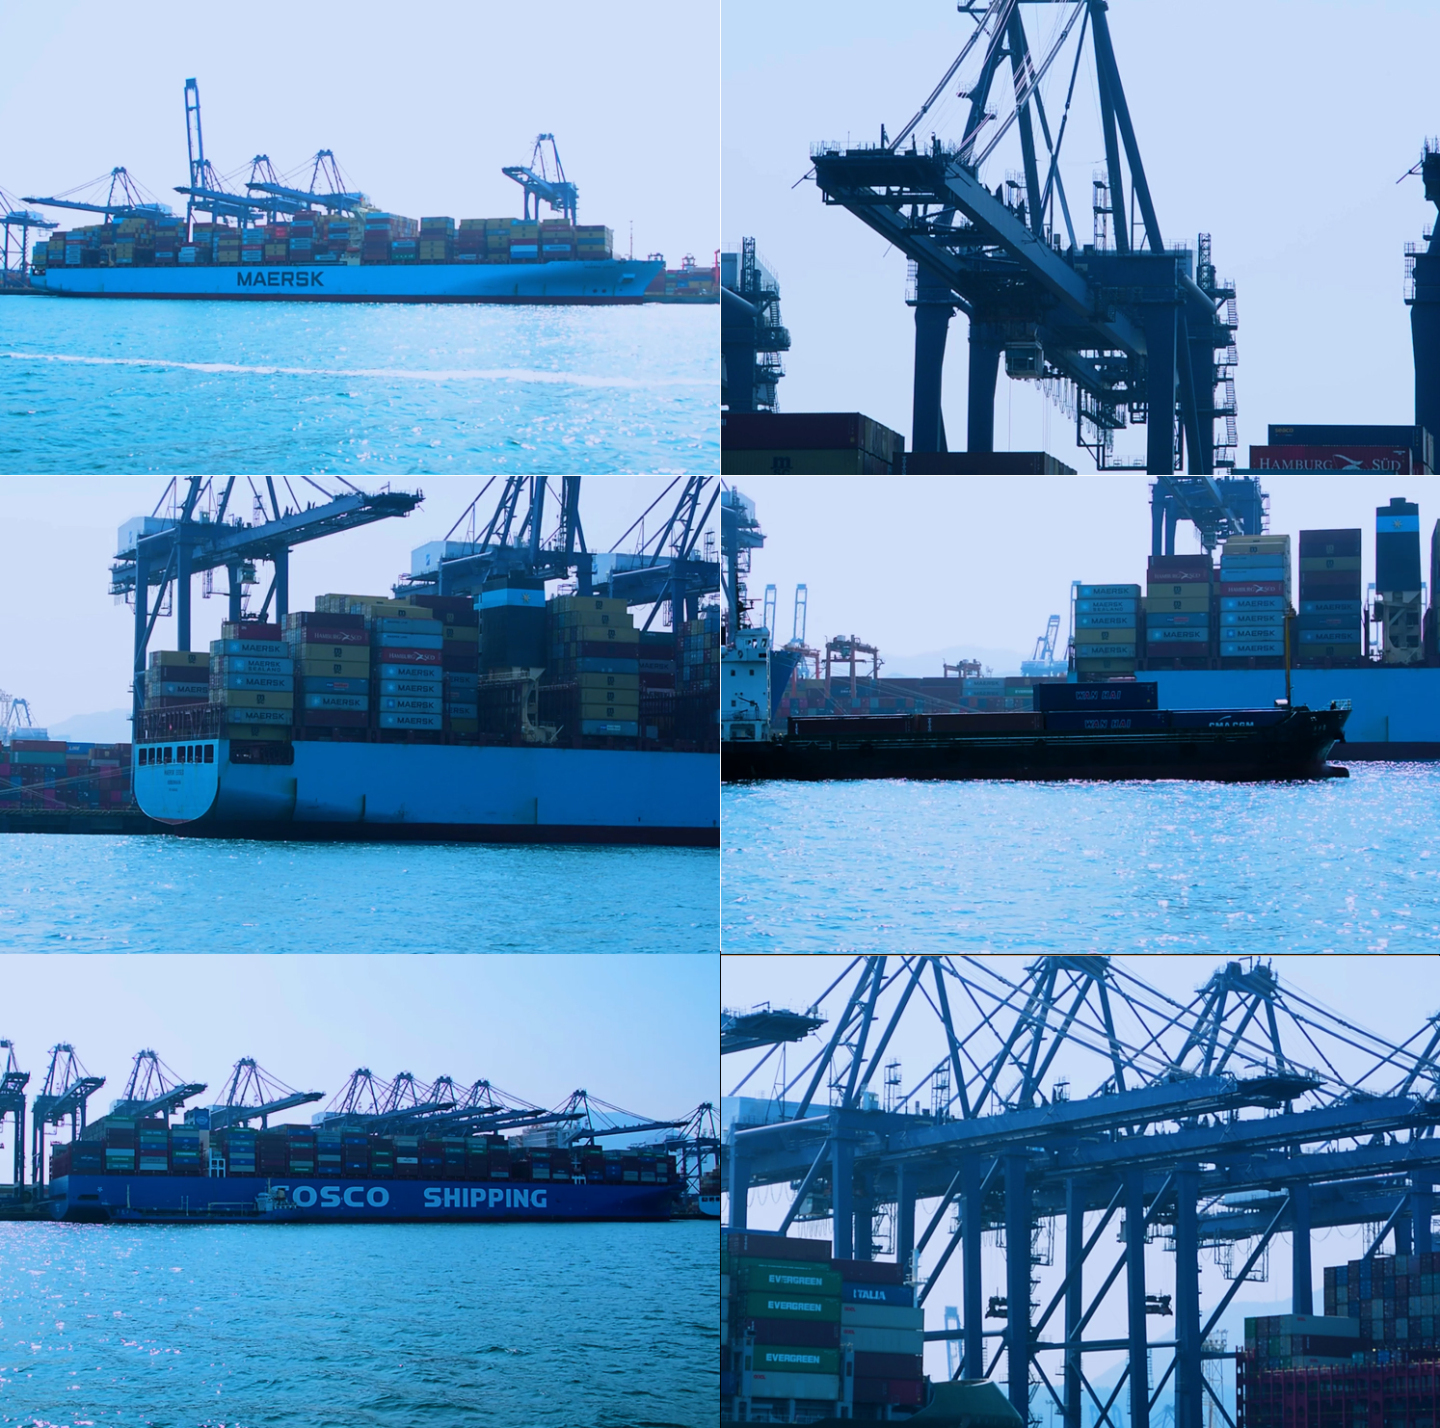 盐田码头港口停泊的大货轮船与吊架